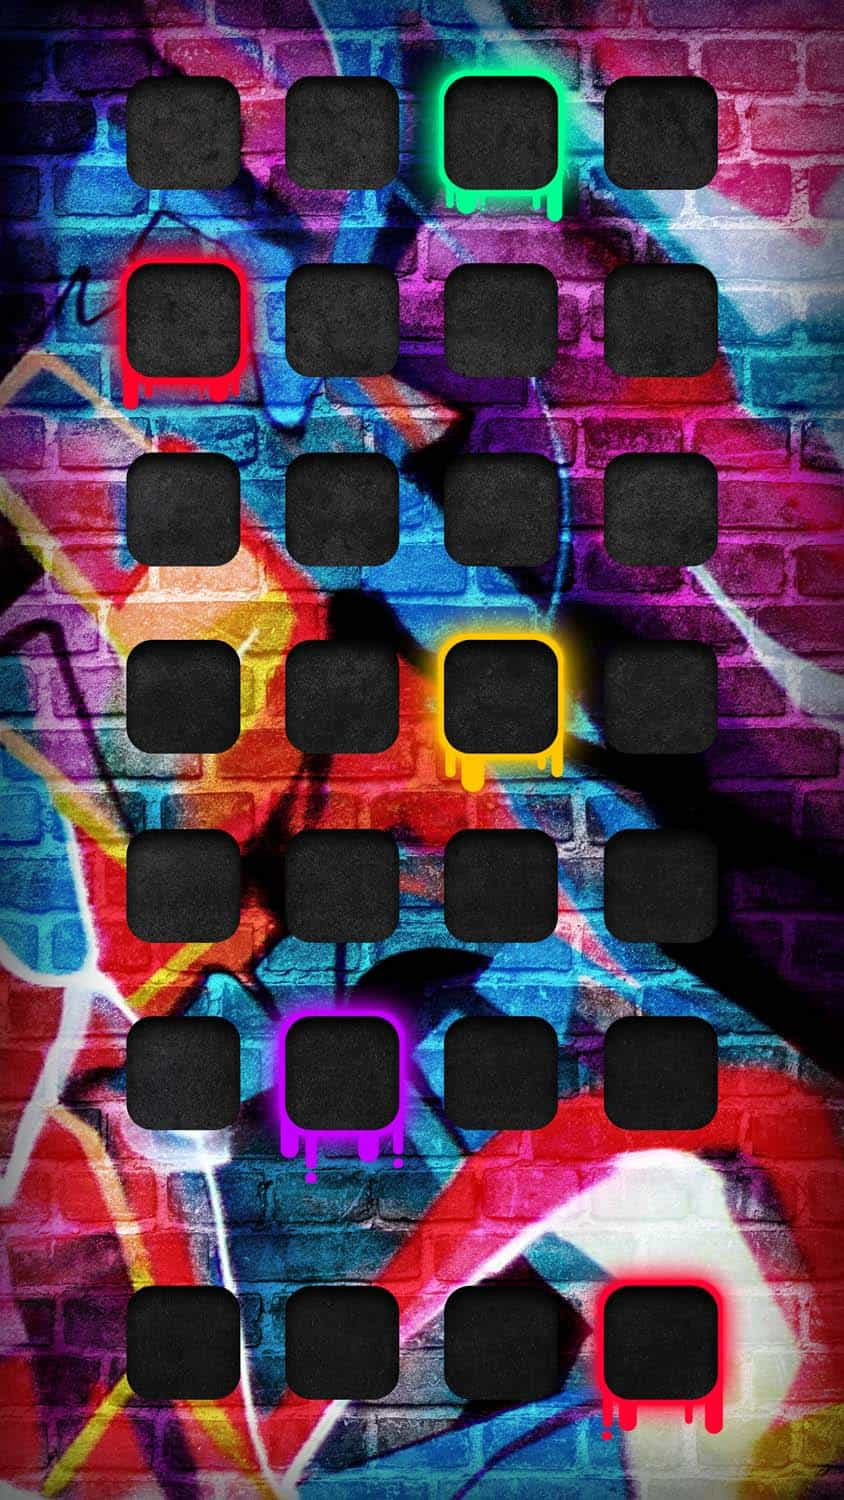 Graffiti Wall iOS App Dock iPhone Wallpaper 4K  iPhone Wallpapers